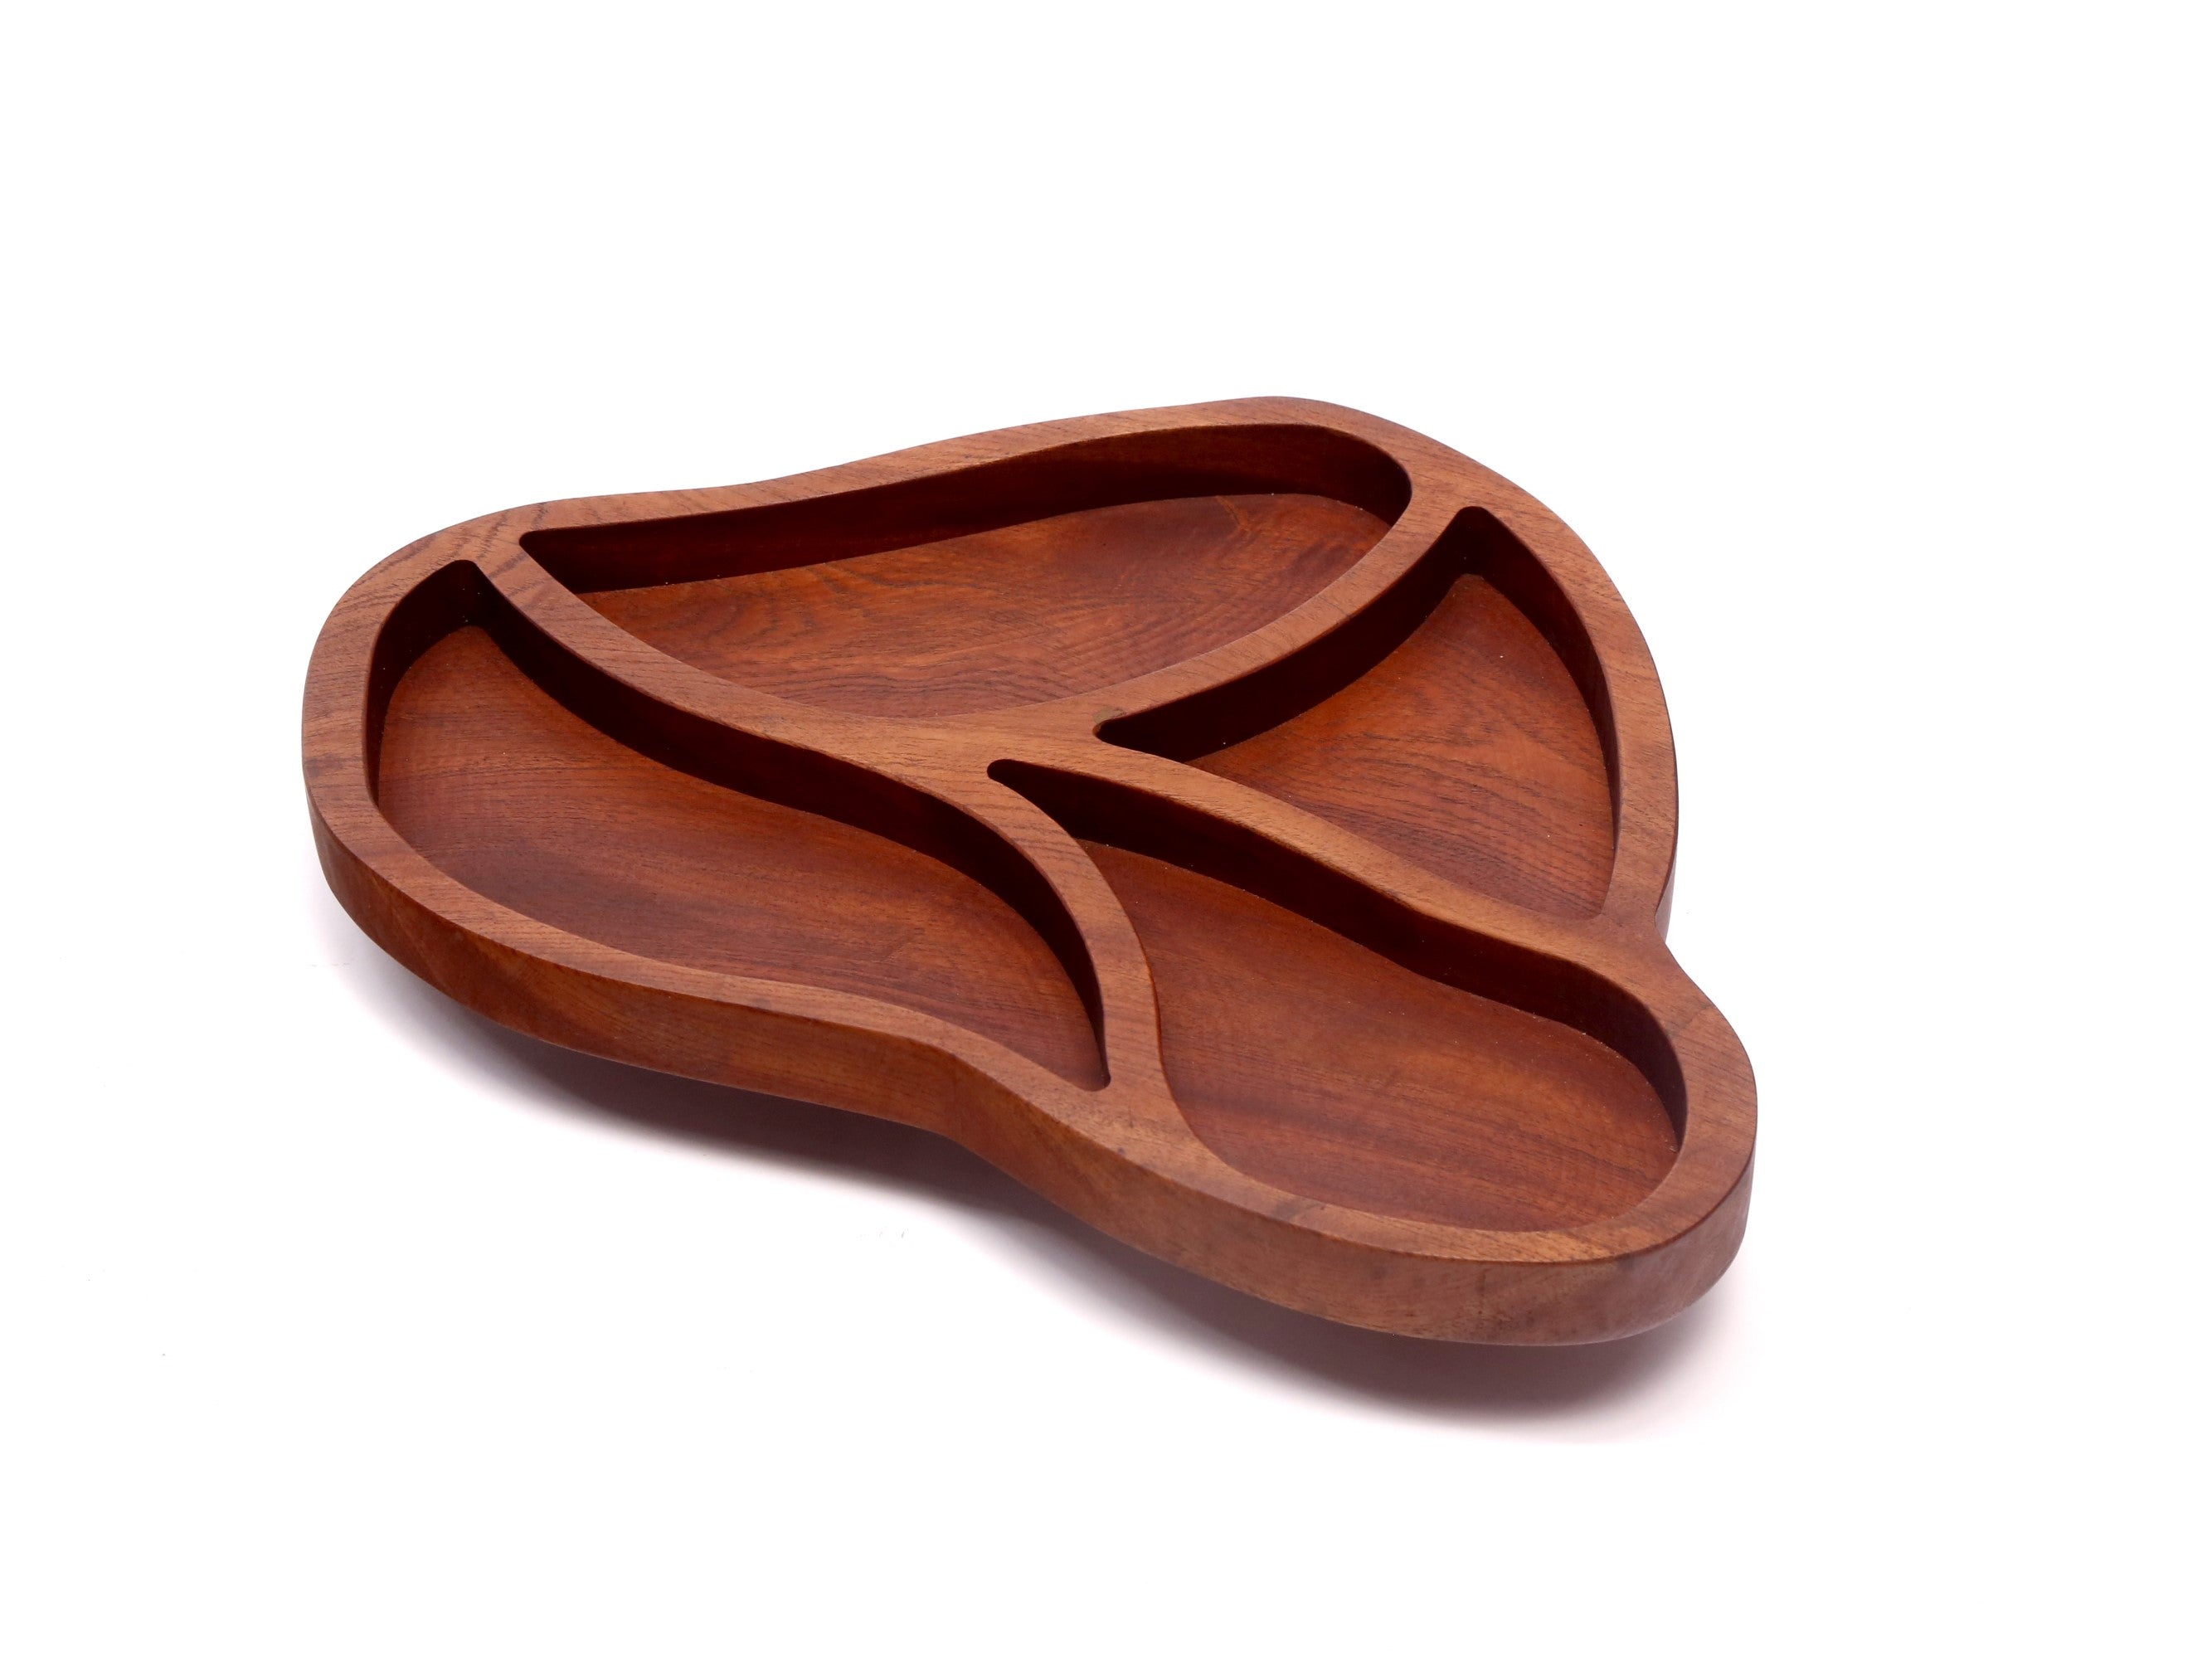 Earth inspired designed wooden platter Platter